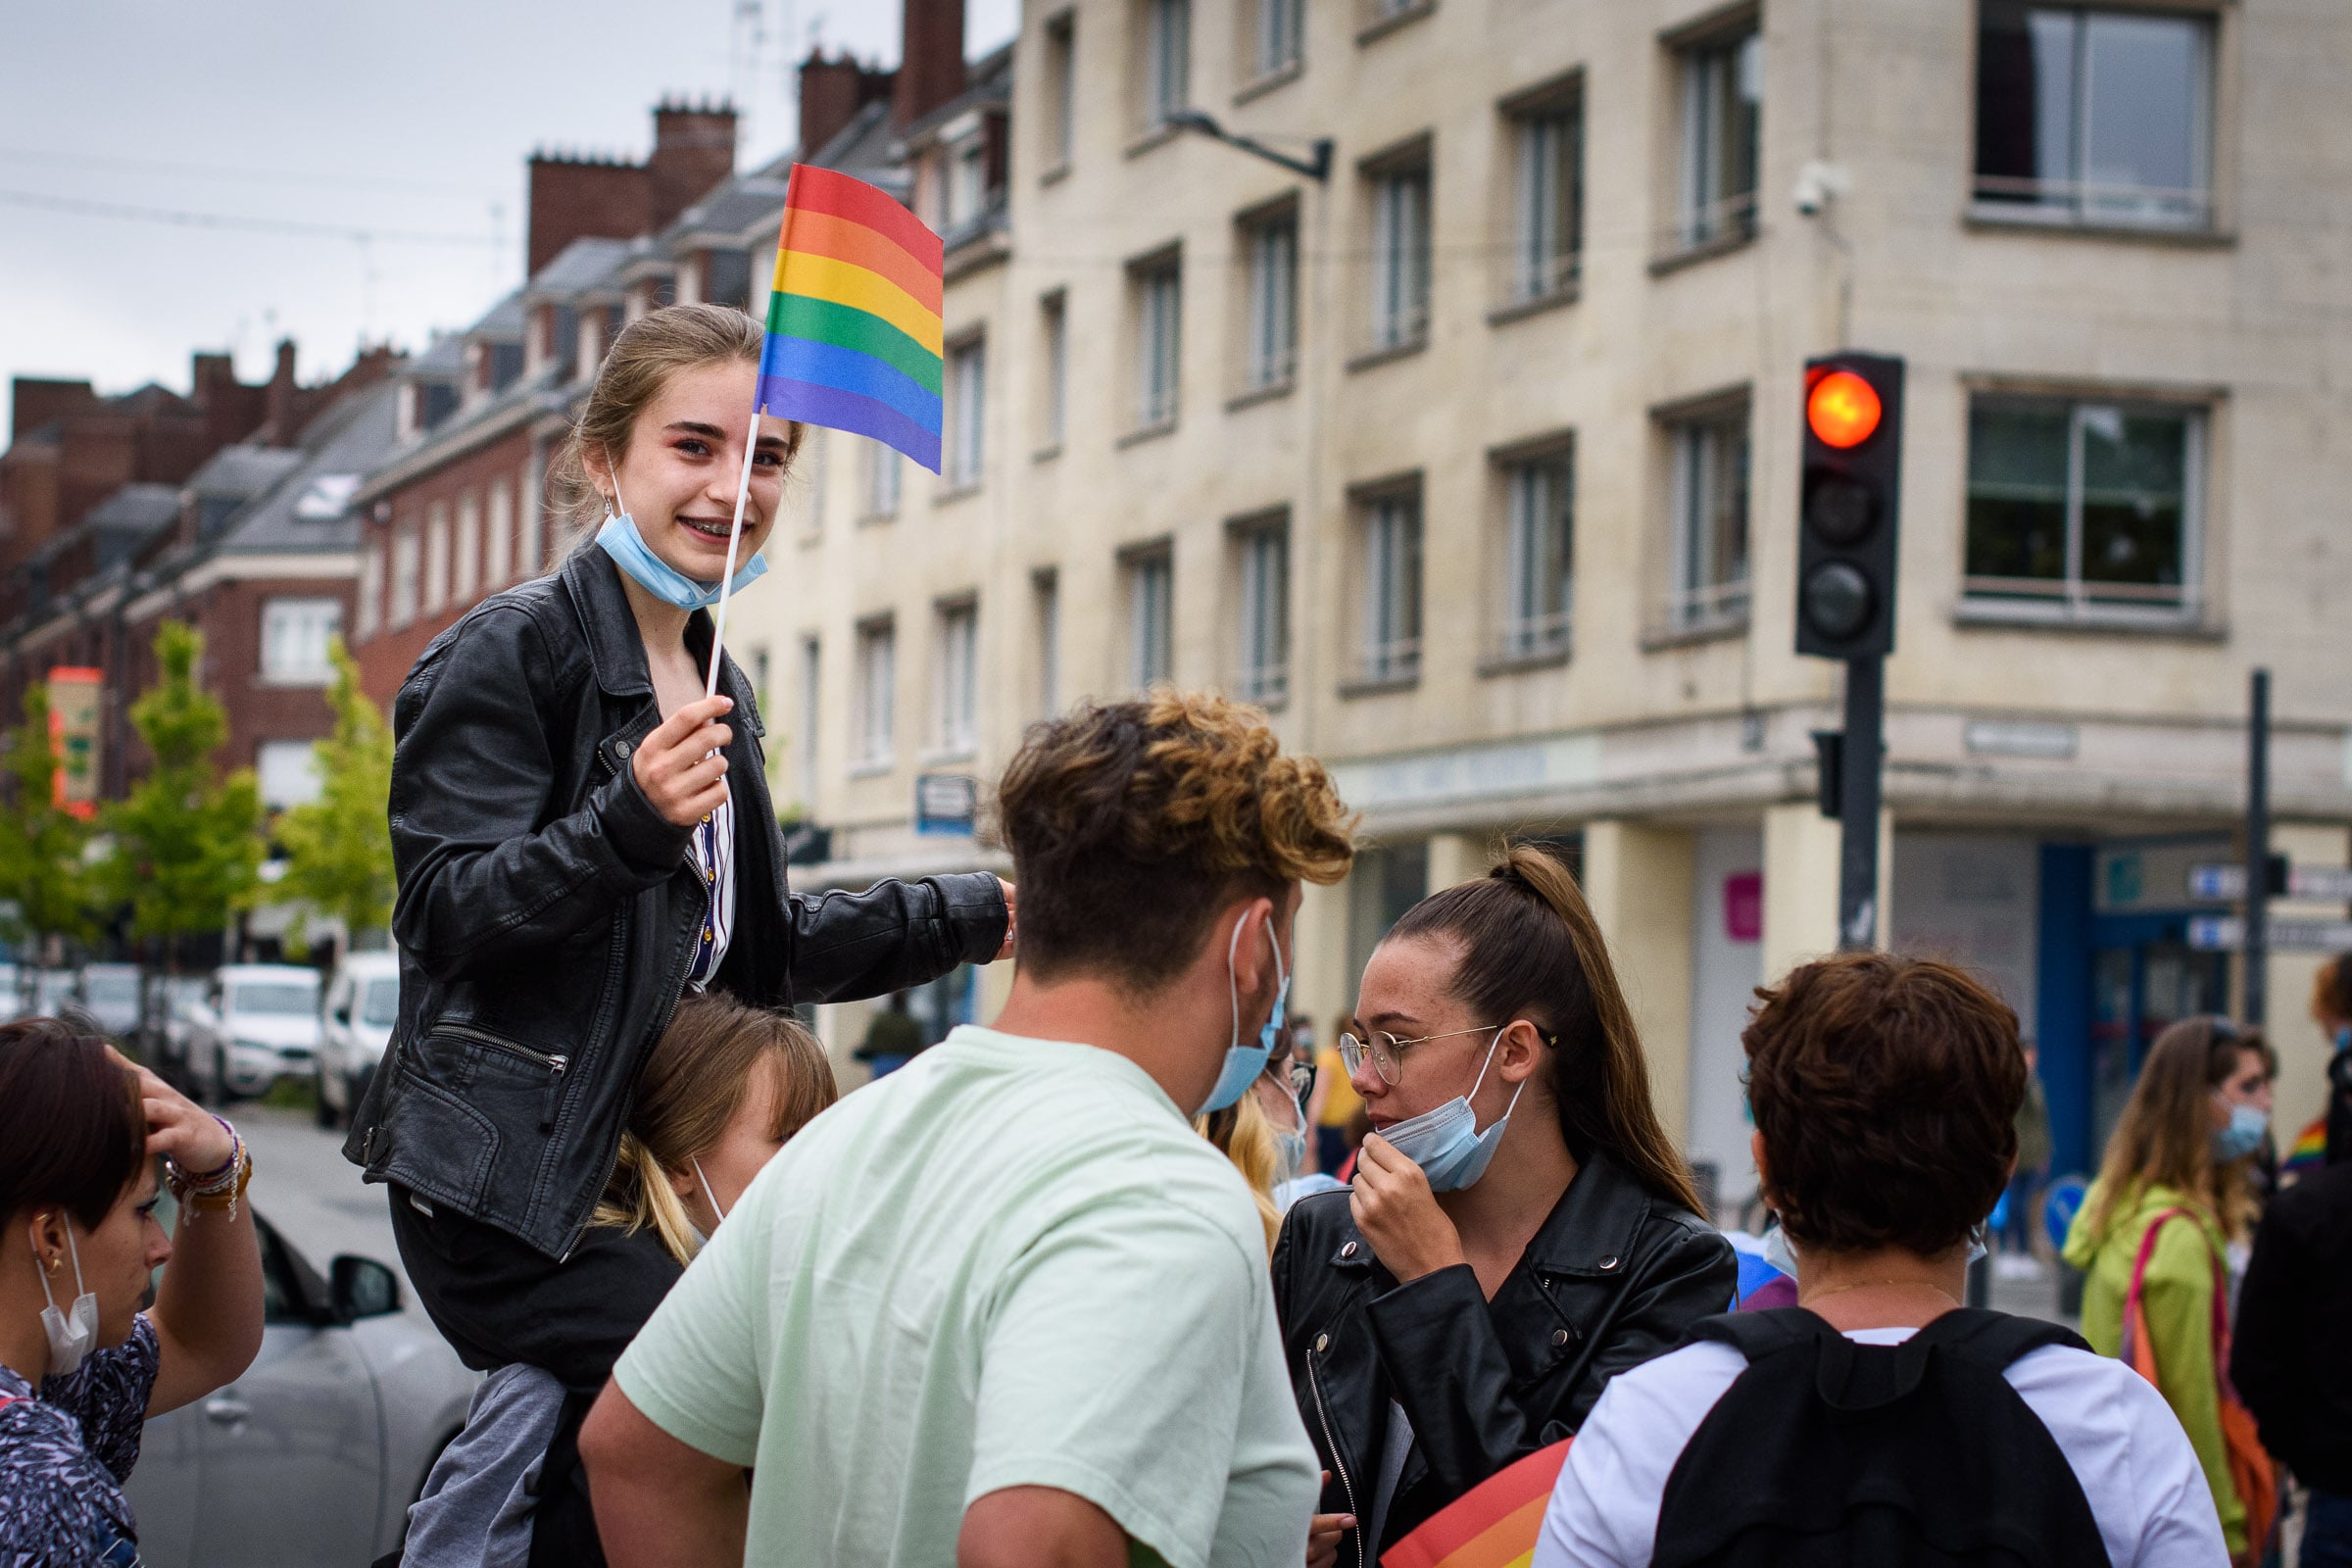 Image de la gaypride d'Amiens en 2021 par DSim Photographe